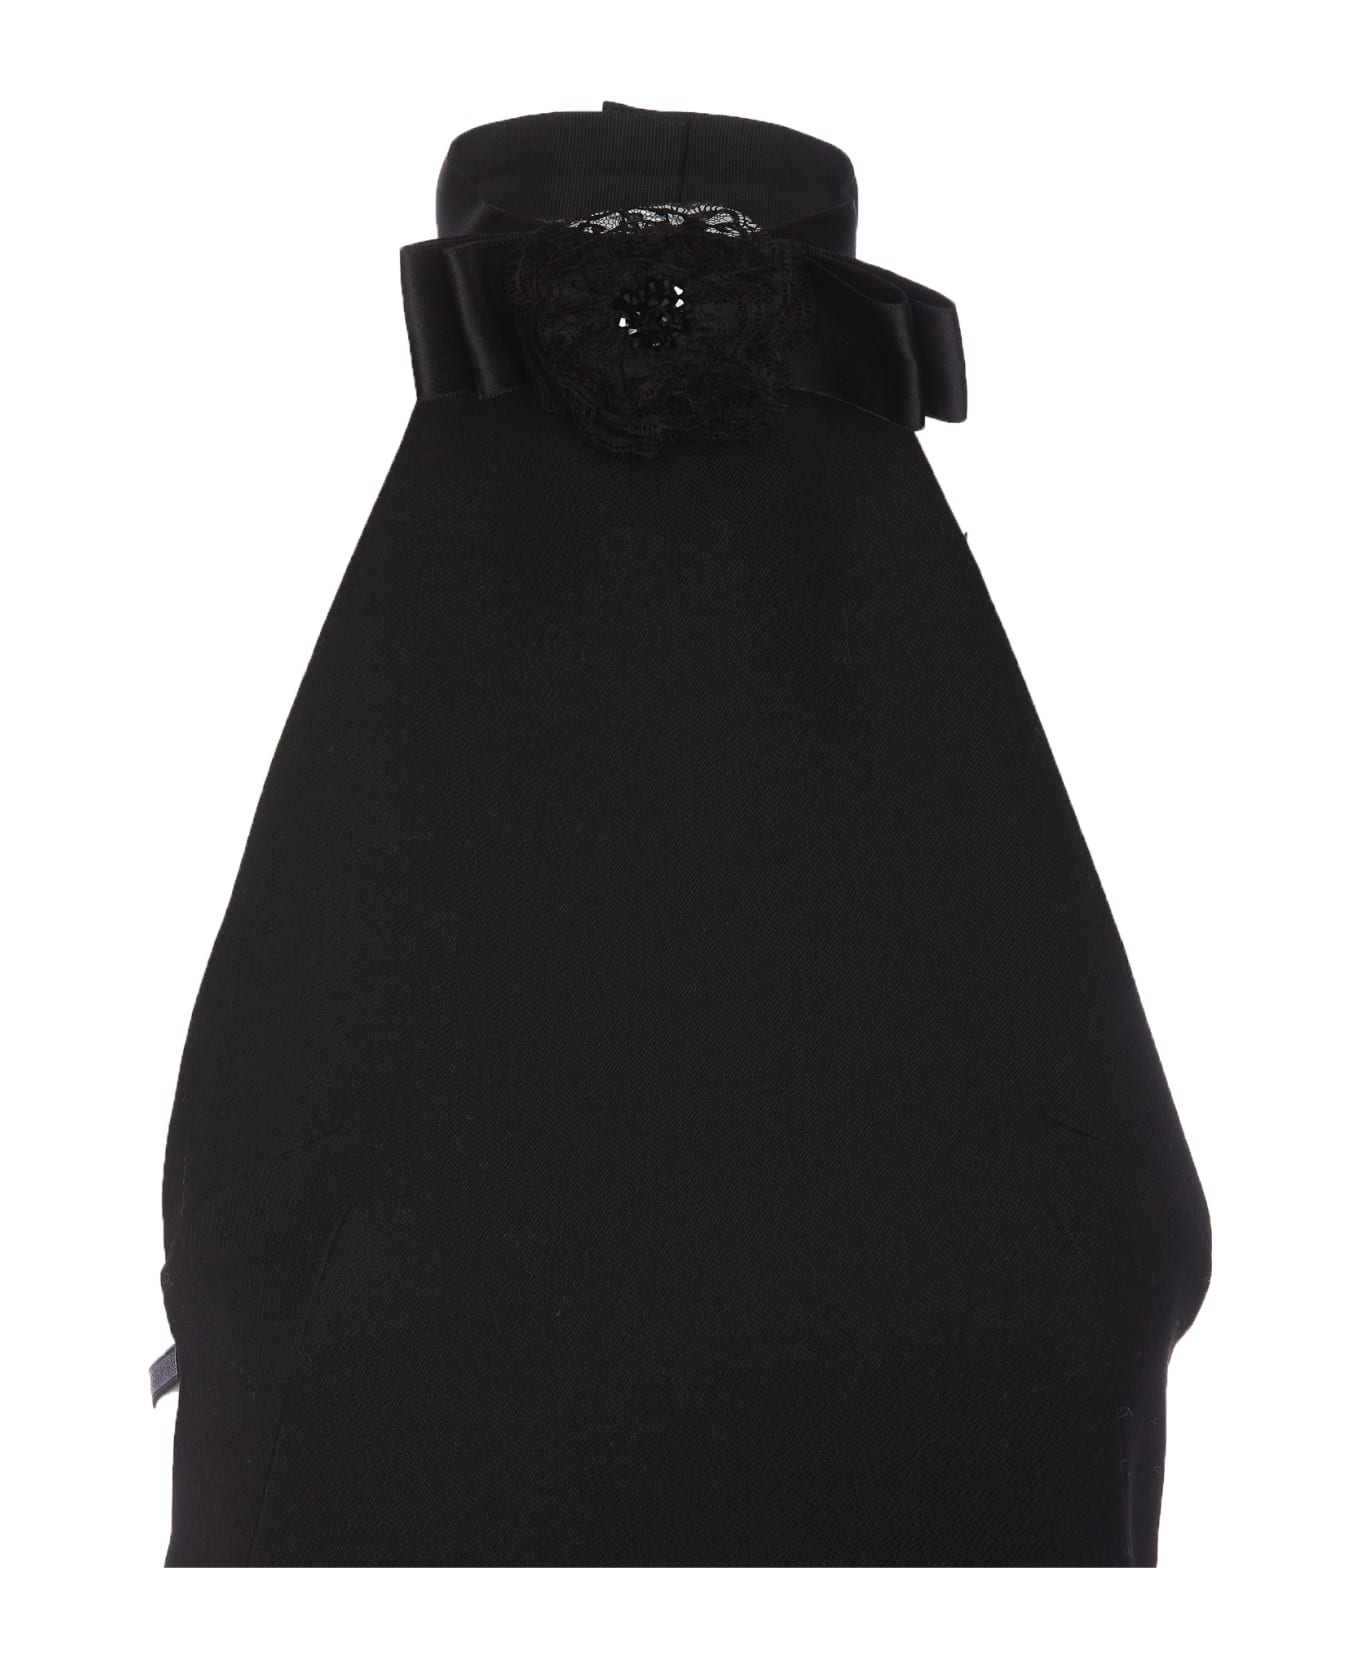 Dolce & Gabbana Short Woolen Dress With Rear Neckline - Black